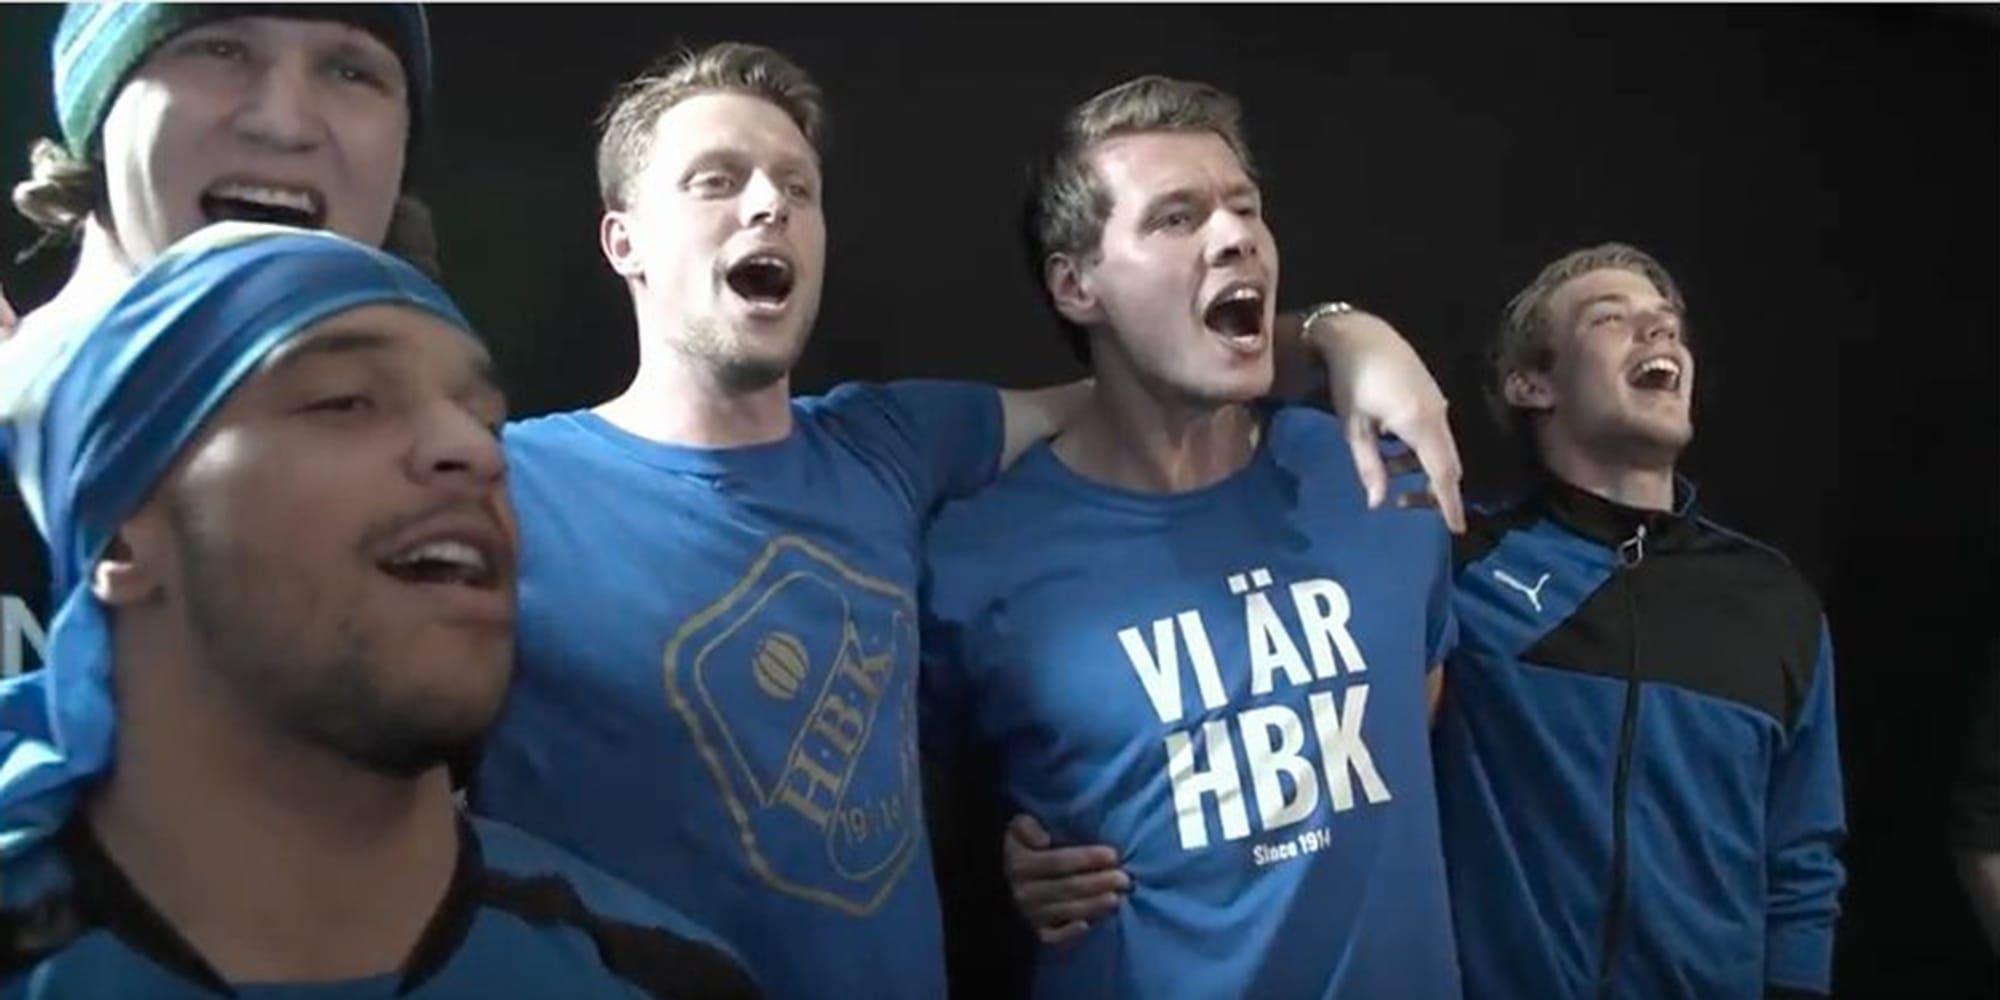 
Nya HBK-sången. Nikolai Alho, Alexander Berntsson, Malkolm Nilsson, Marcus Johansson och Marcus Mathisen tar i under refrängen. Bilden är hämtad från videon.